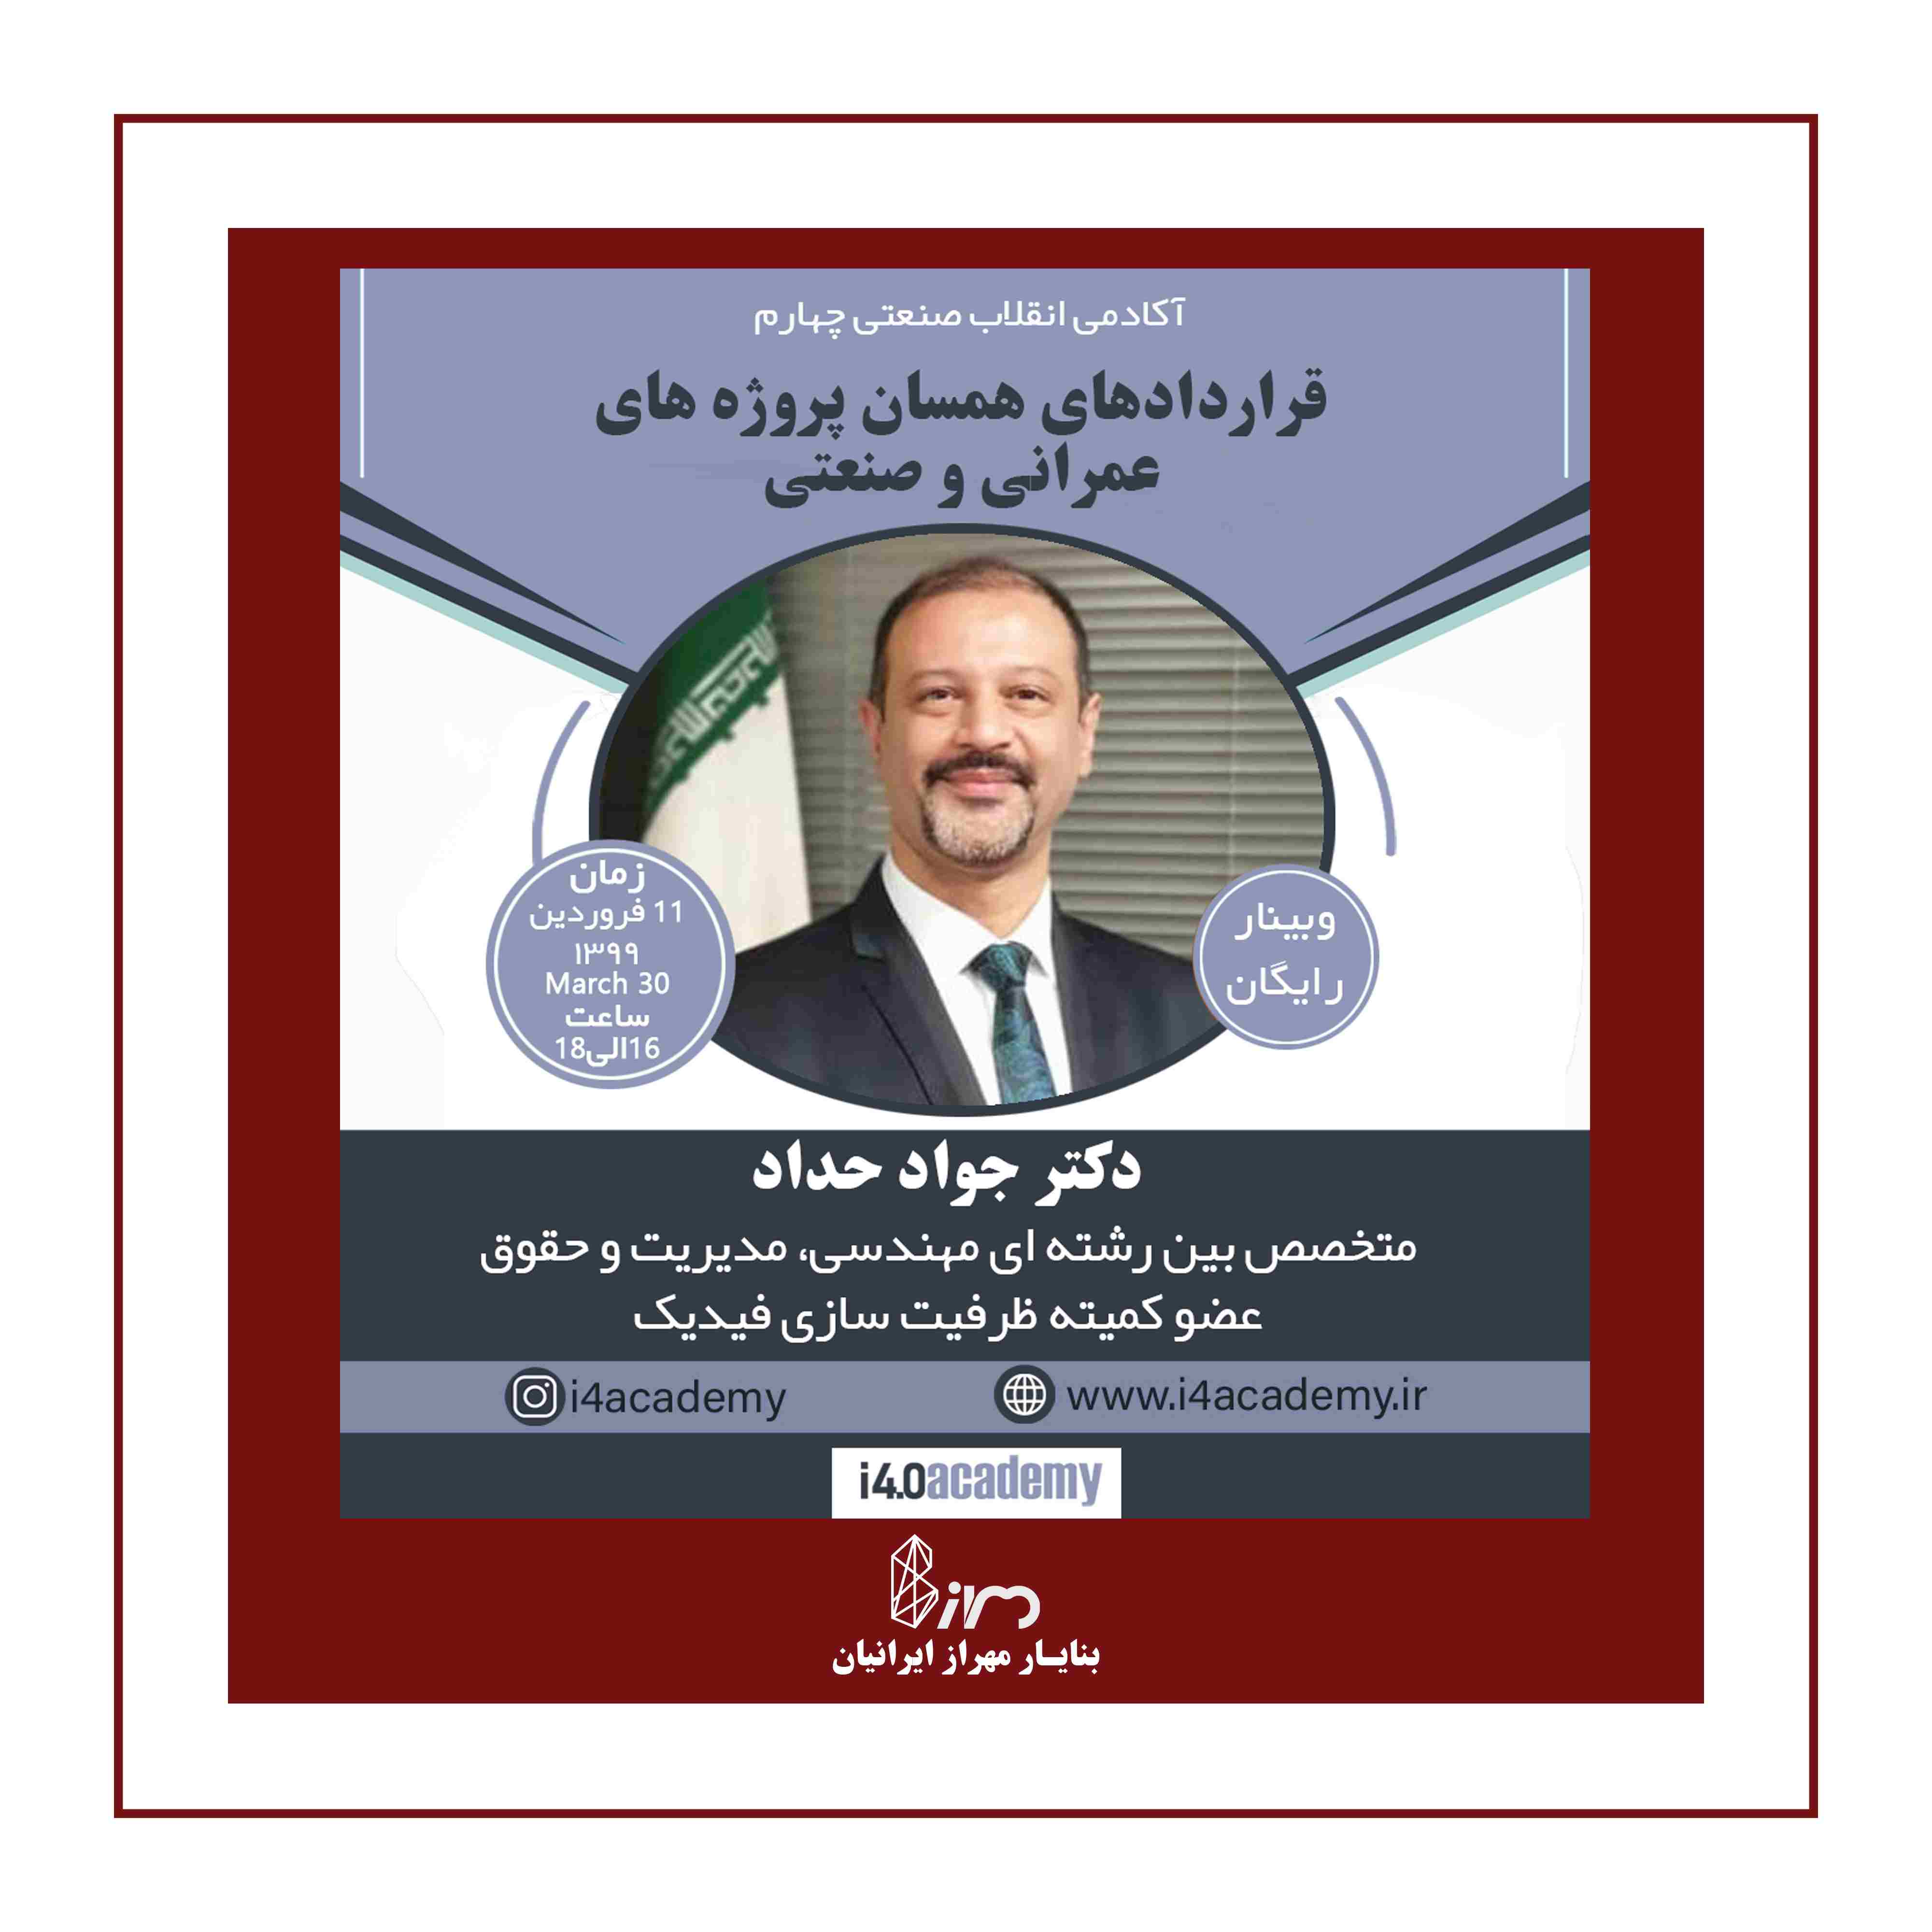 وبینار دکتر جواد حداد، قراردادهای همسان پروژه های عمرانی و صنعتی، حقوق ساخت ، فیدیک، بنایار مهراز ایرانیان